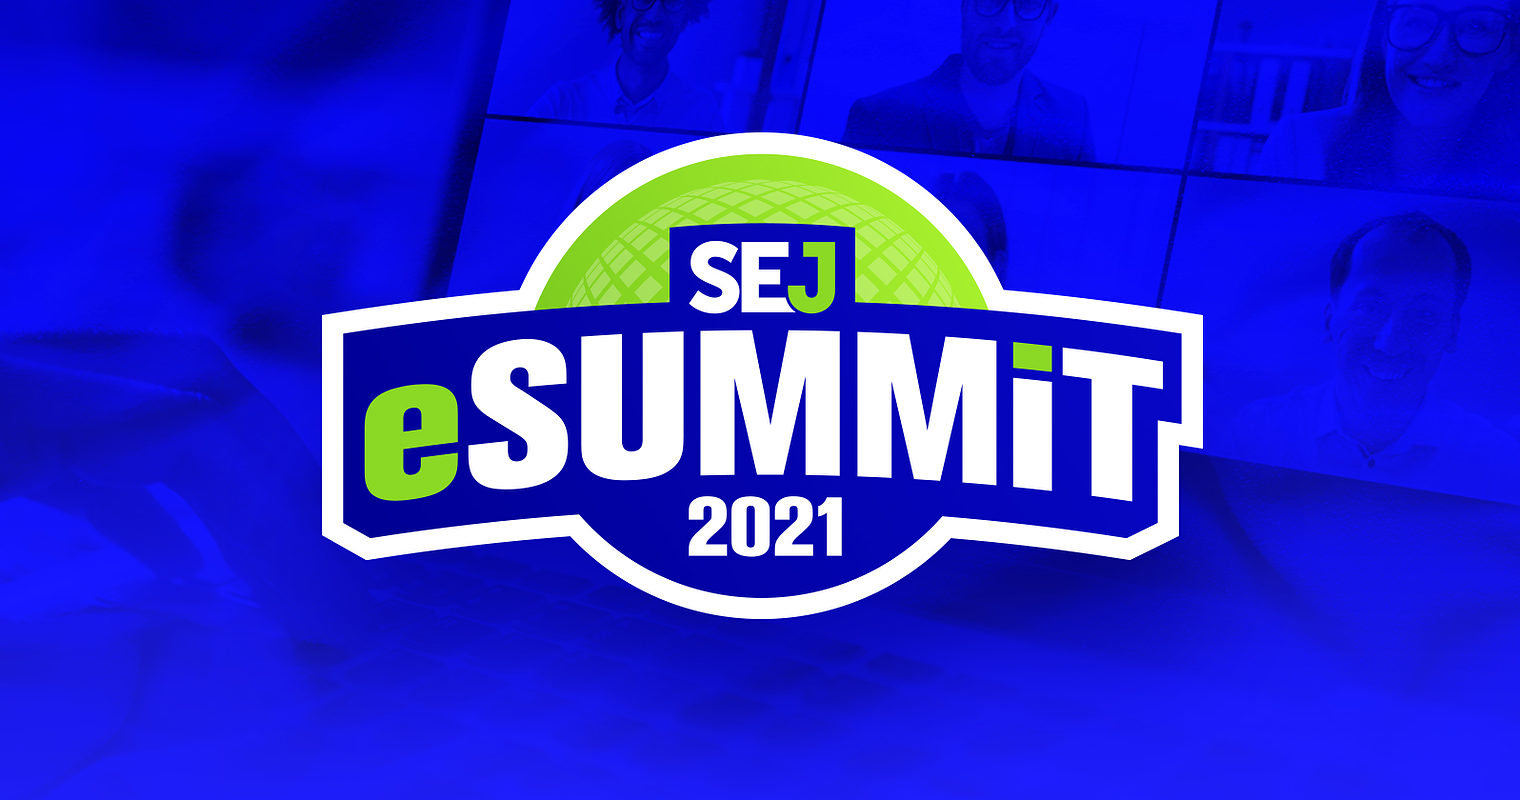 17 SEO & Digital Marketing Expert Tips from SEJ eSummit 2021